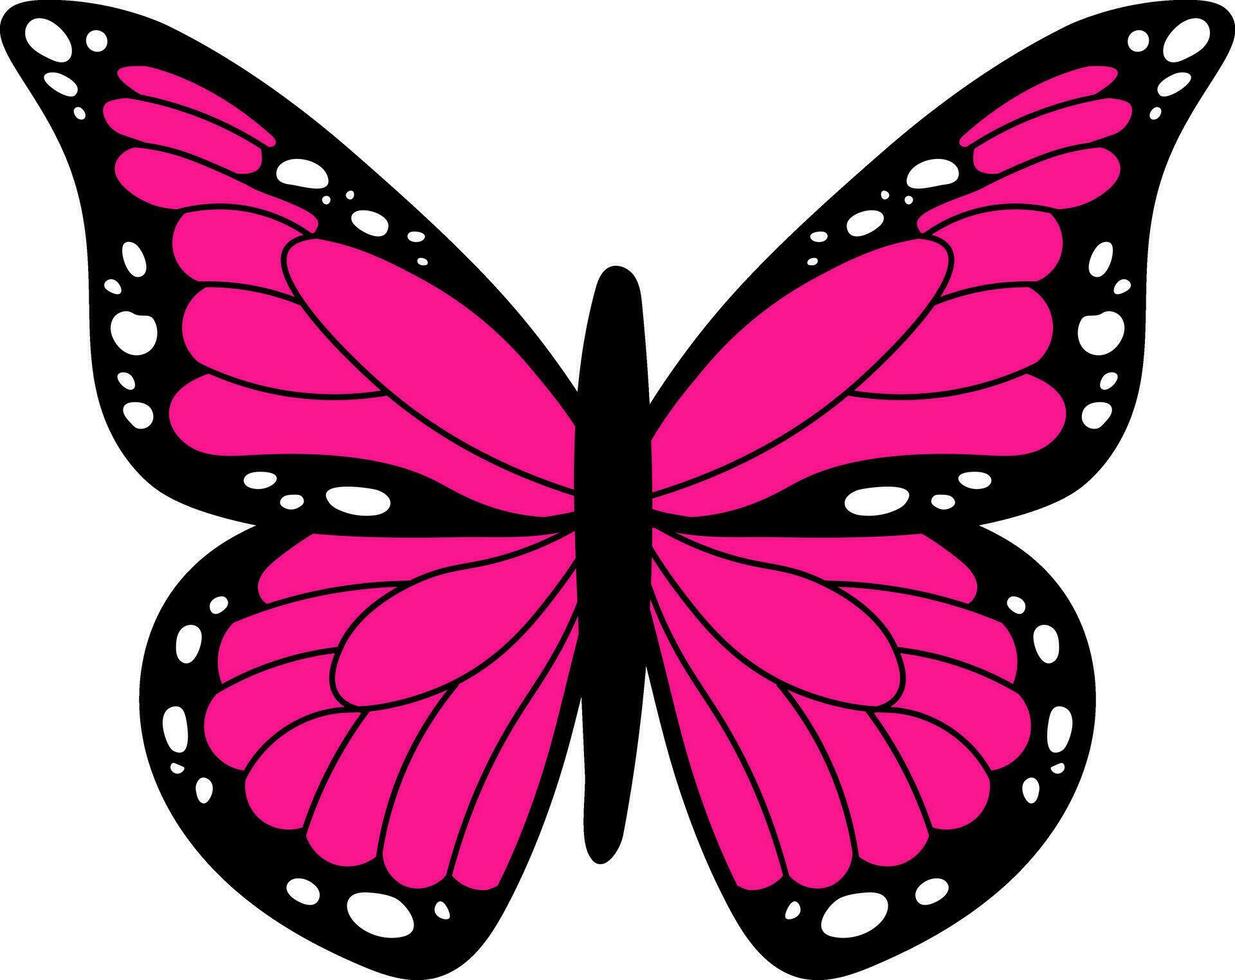 roze en zwart emo vlinder. trending vlinder van de jaren 2000 vector